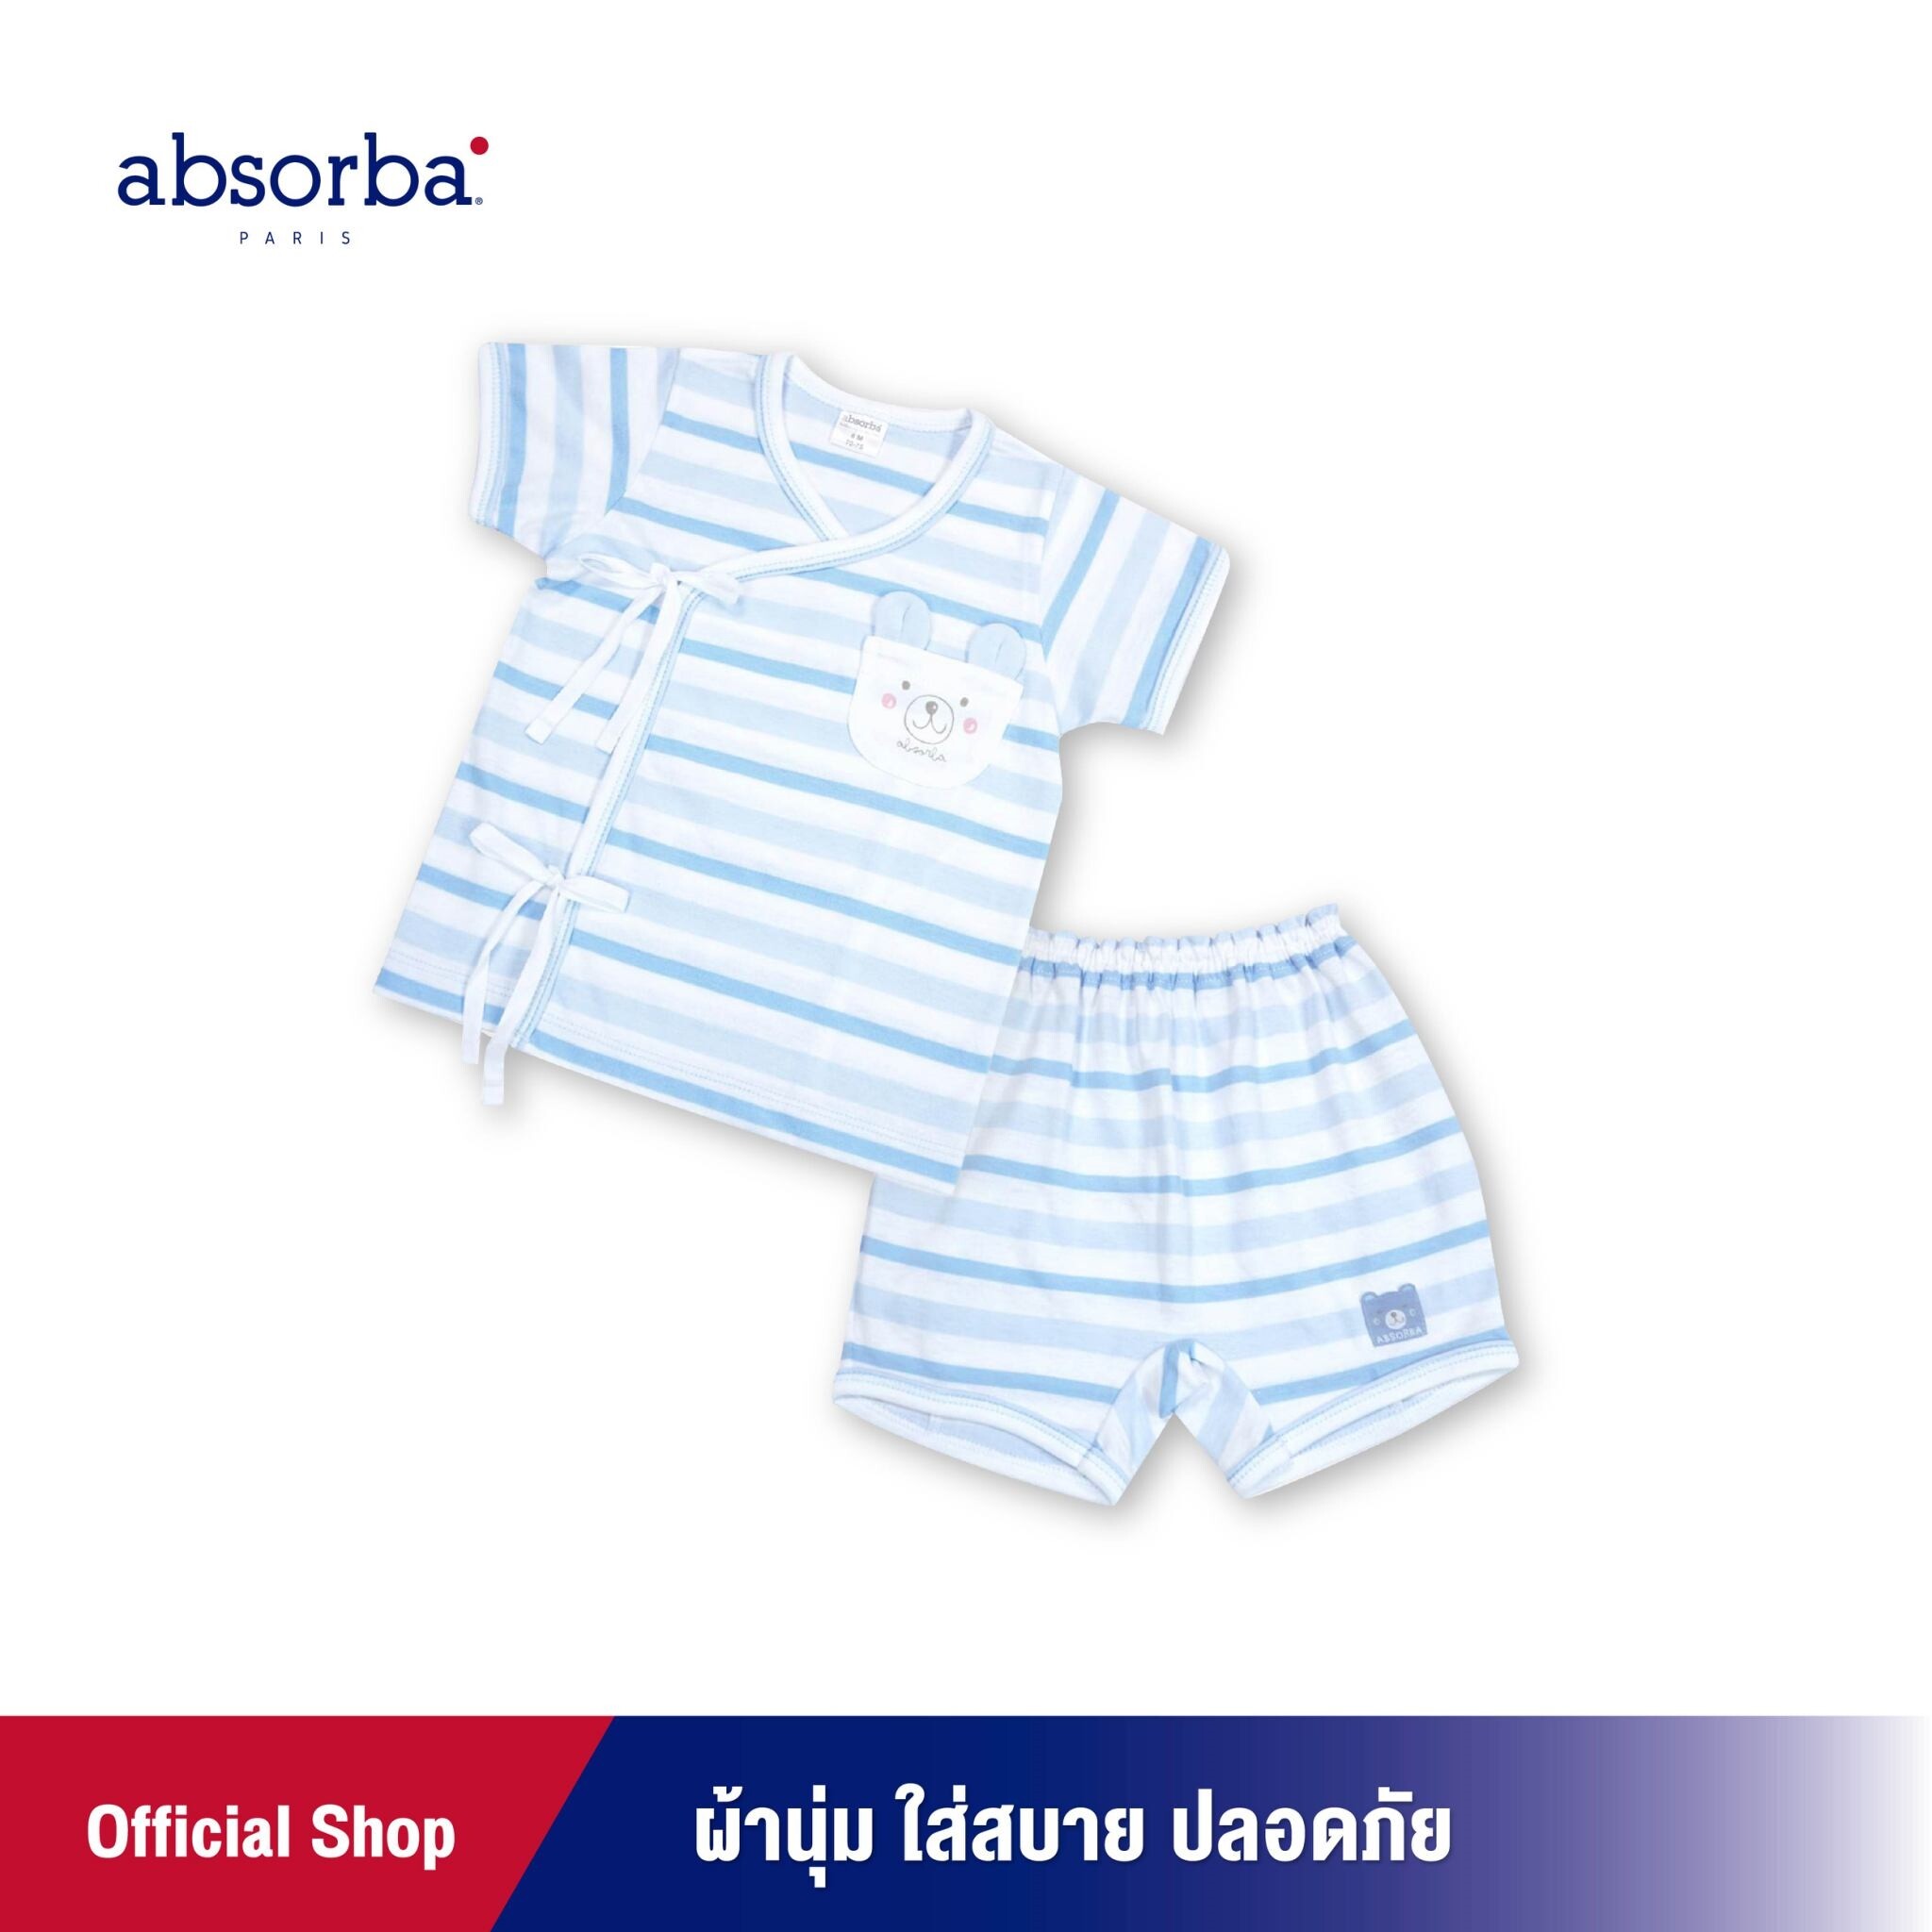 ราคา absorba (แอ๊บซอร์บา) ชุดเสื้อป้ายเด็กแขนสั้น หรือชุดผูกหน้าเด็กแขนสั้น ลายริ้วสีฟ้า สำหรับเด็กแรกเกิด ถึง 12 เดือน - R1R2002BU